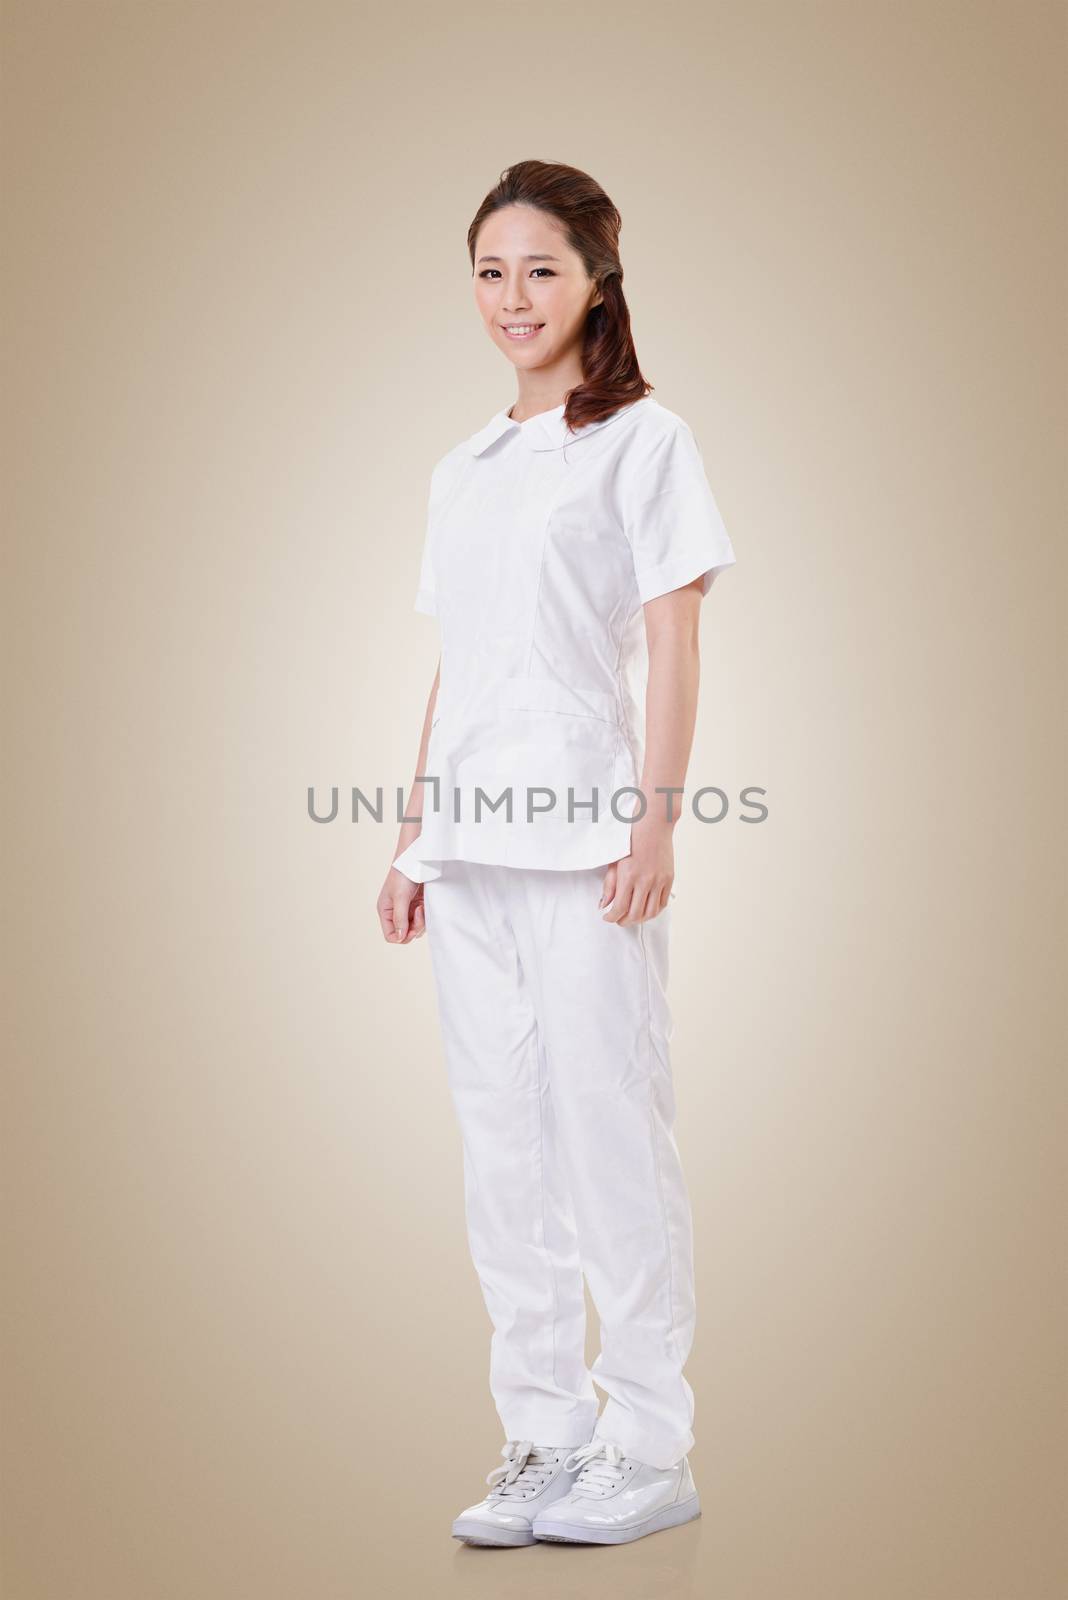 Attractive Asian nurse, woman portrait against white background.